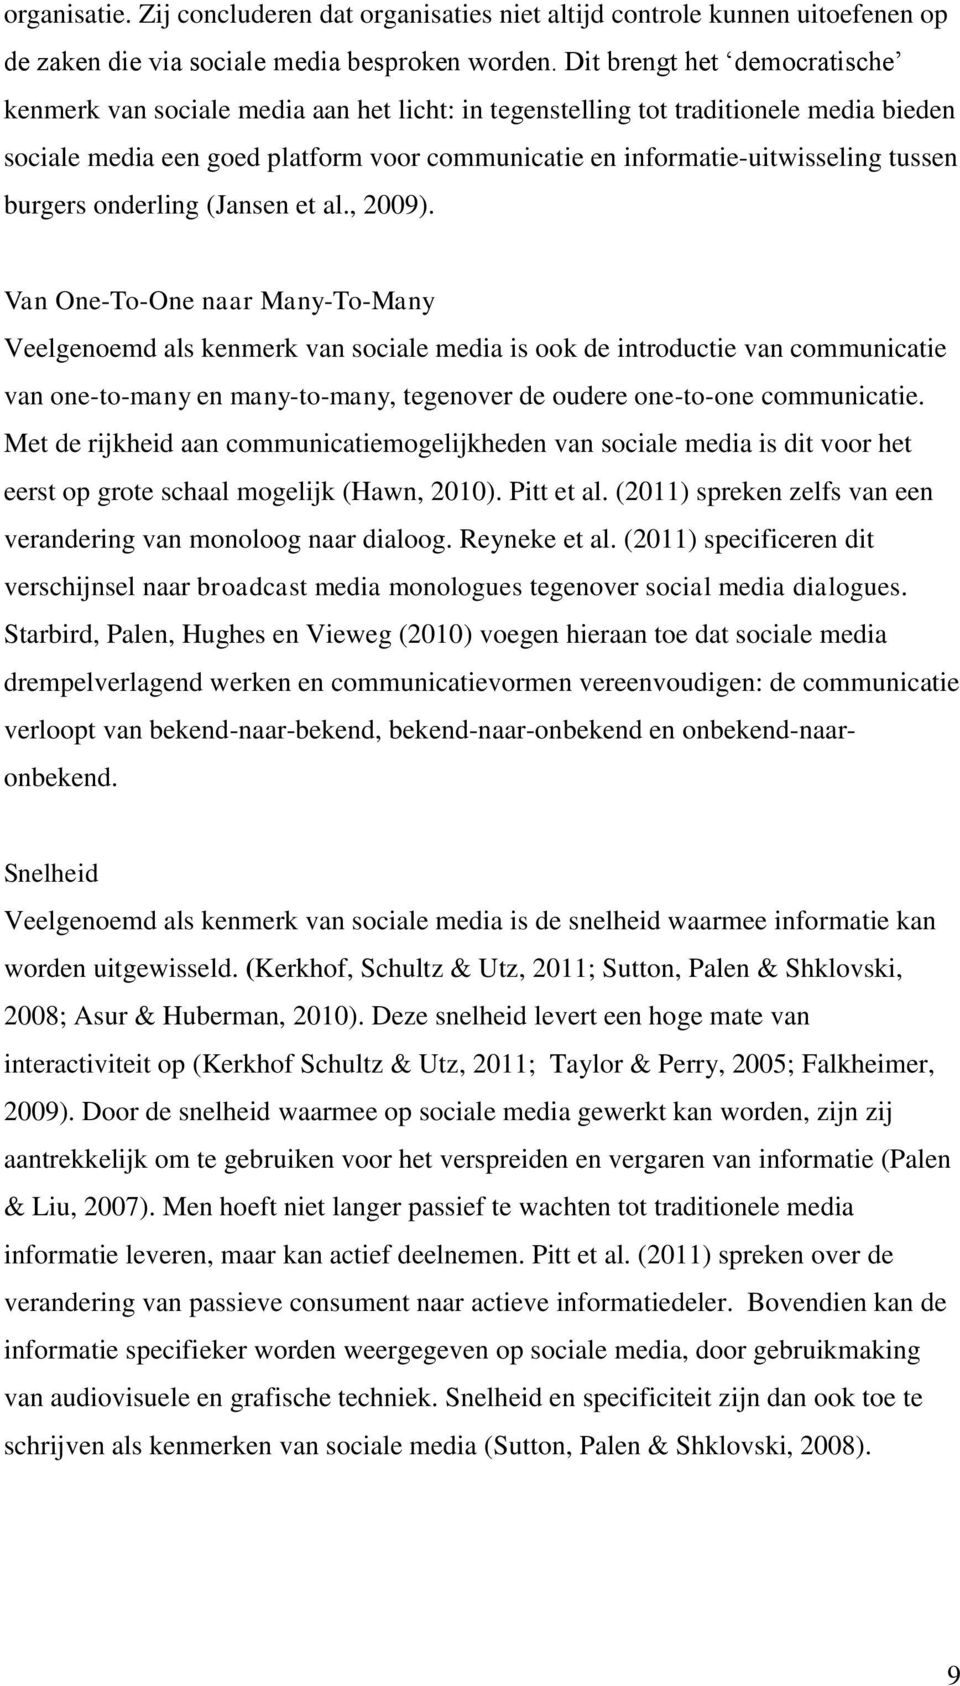 tussen burgers onderling (Jansen et al., 2009).